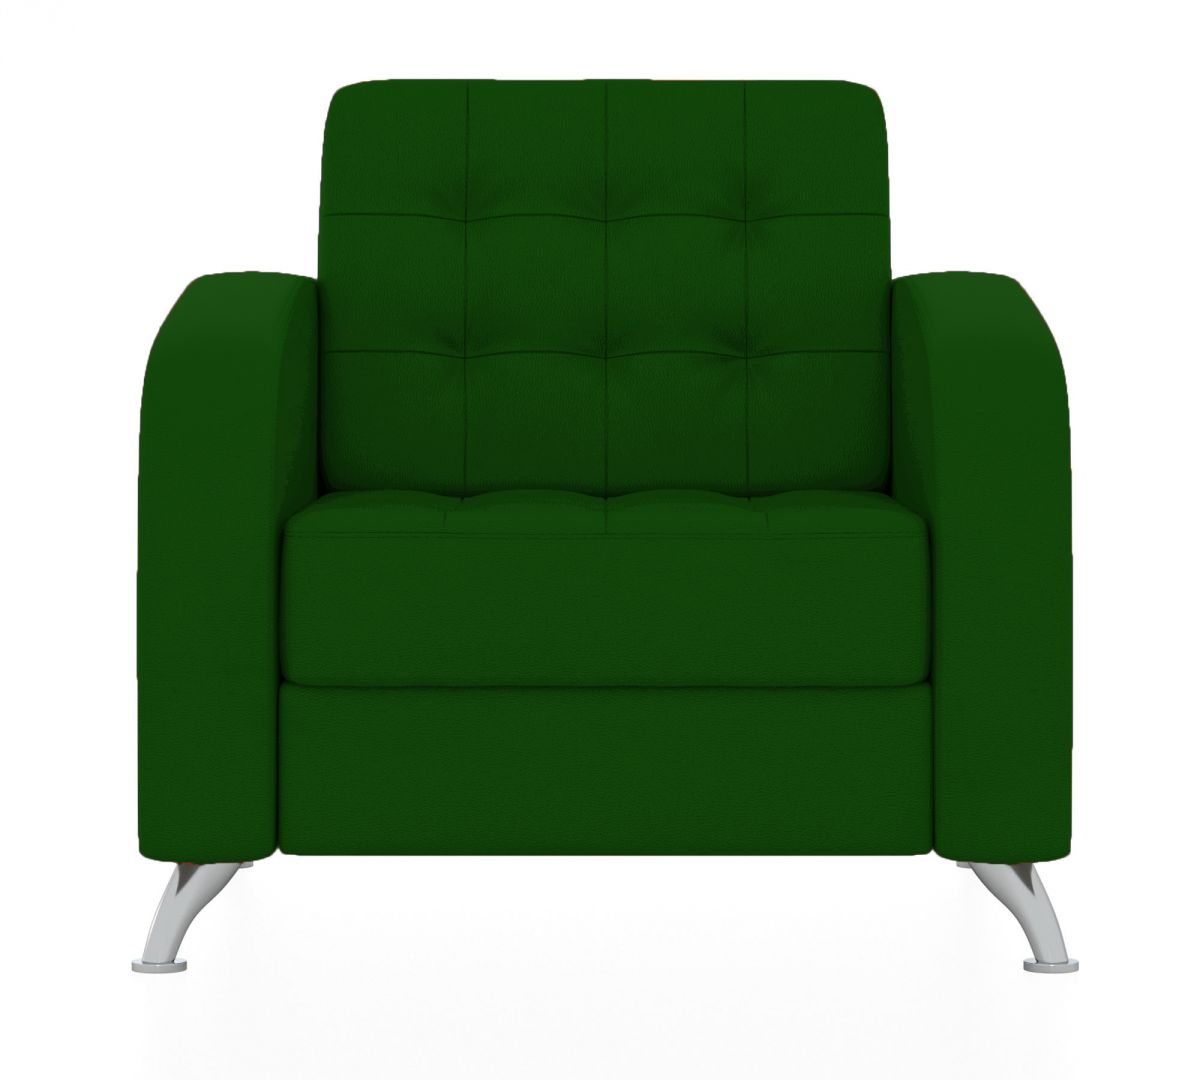 Кресло Рольф (Цвет обивки зелёный)